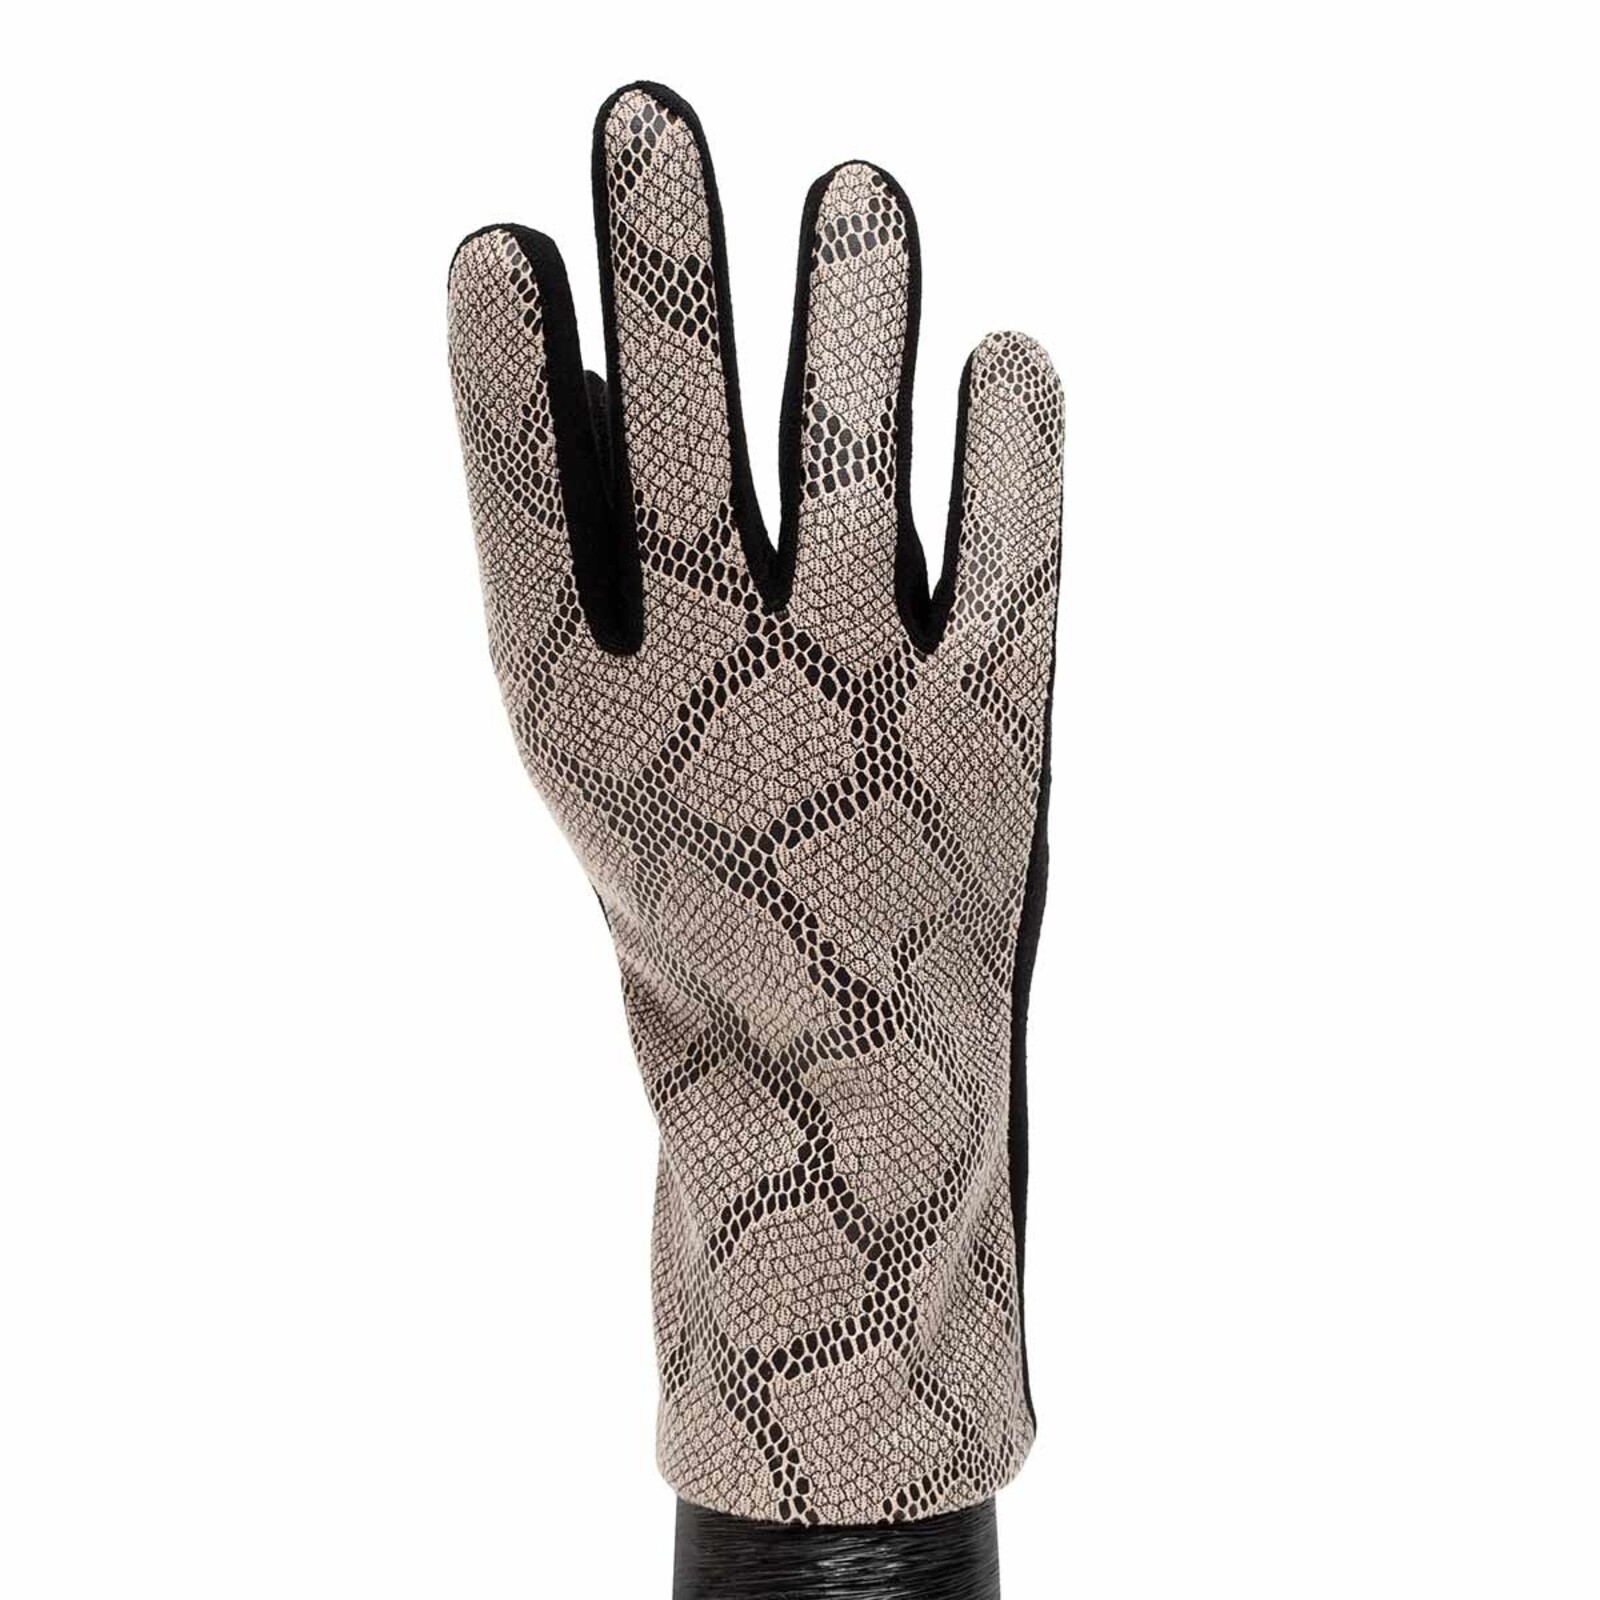 Meravic Gray Faux Snake Skin Glove  x7983 loading=